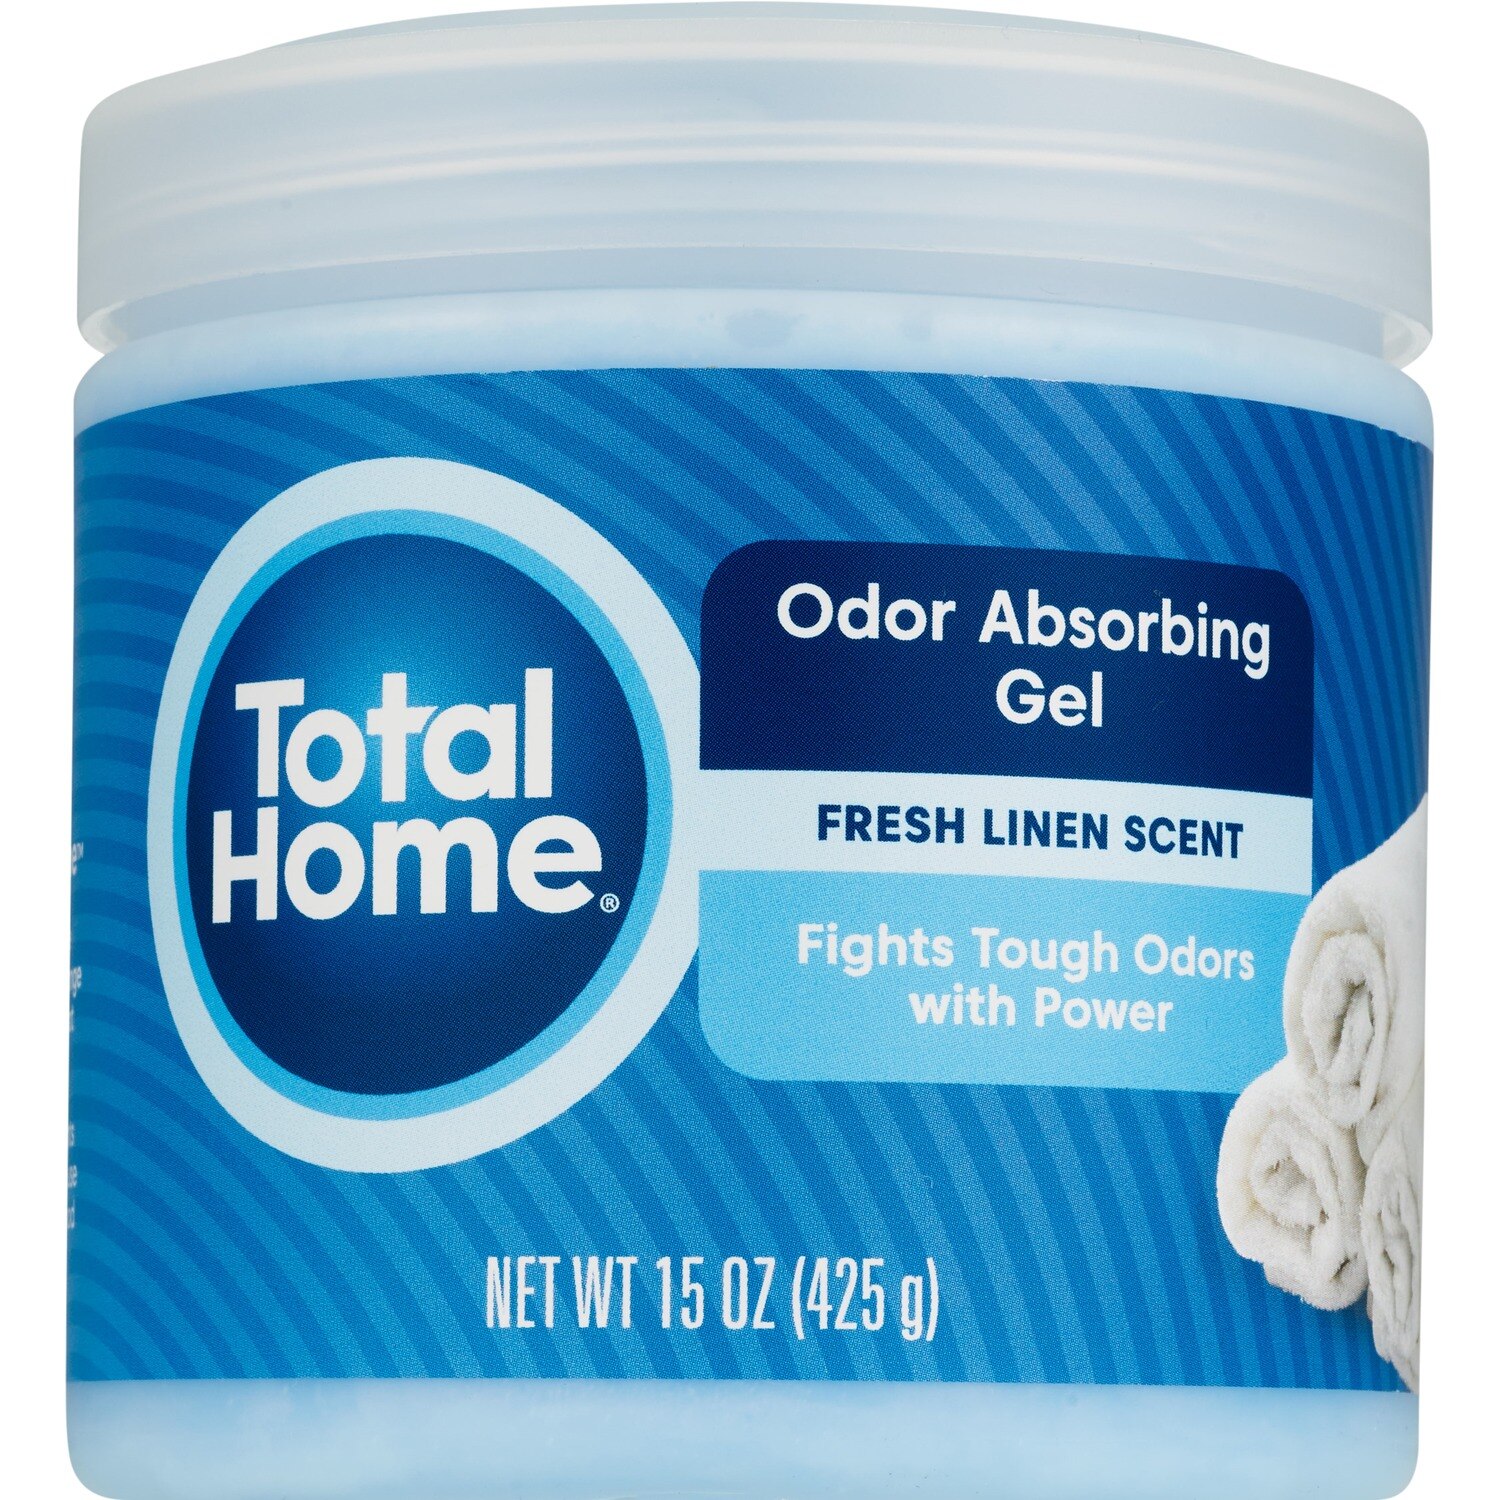 Total Home Odor Absorbing Gel, Fresh Linen Scent